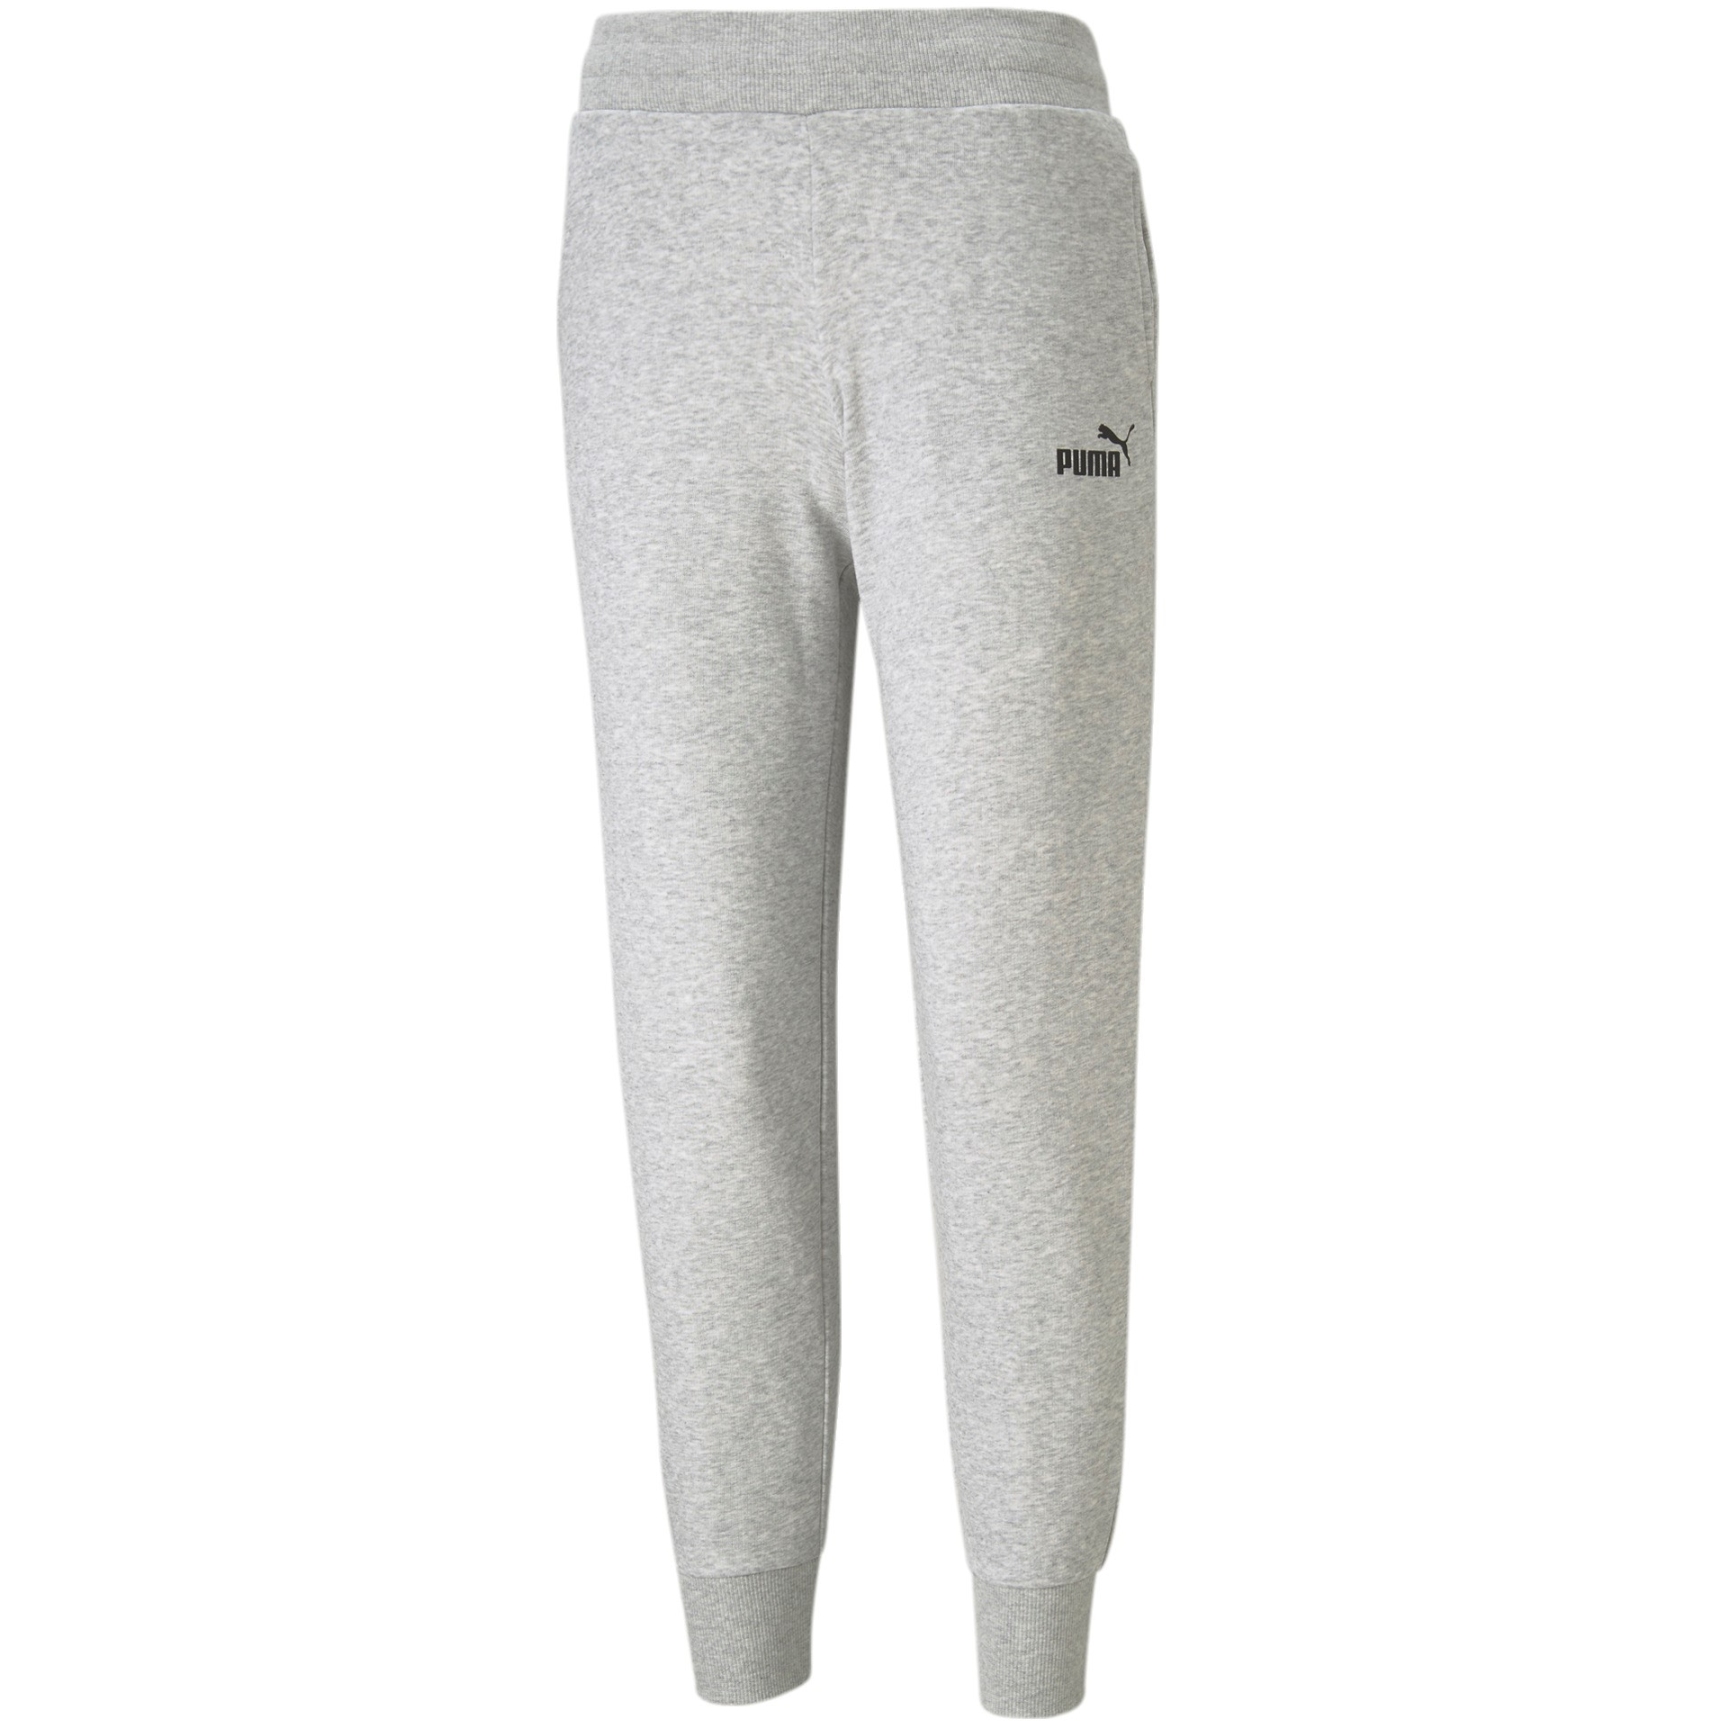 Produktbild von Puma Essential Damen Sweatpants - Light Gray Heather